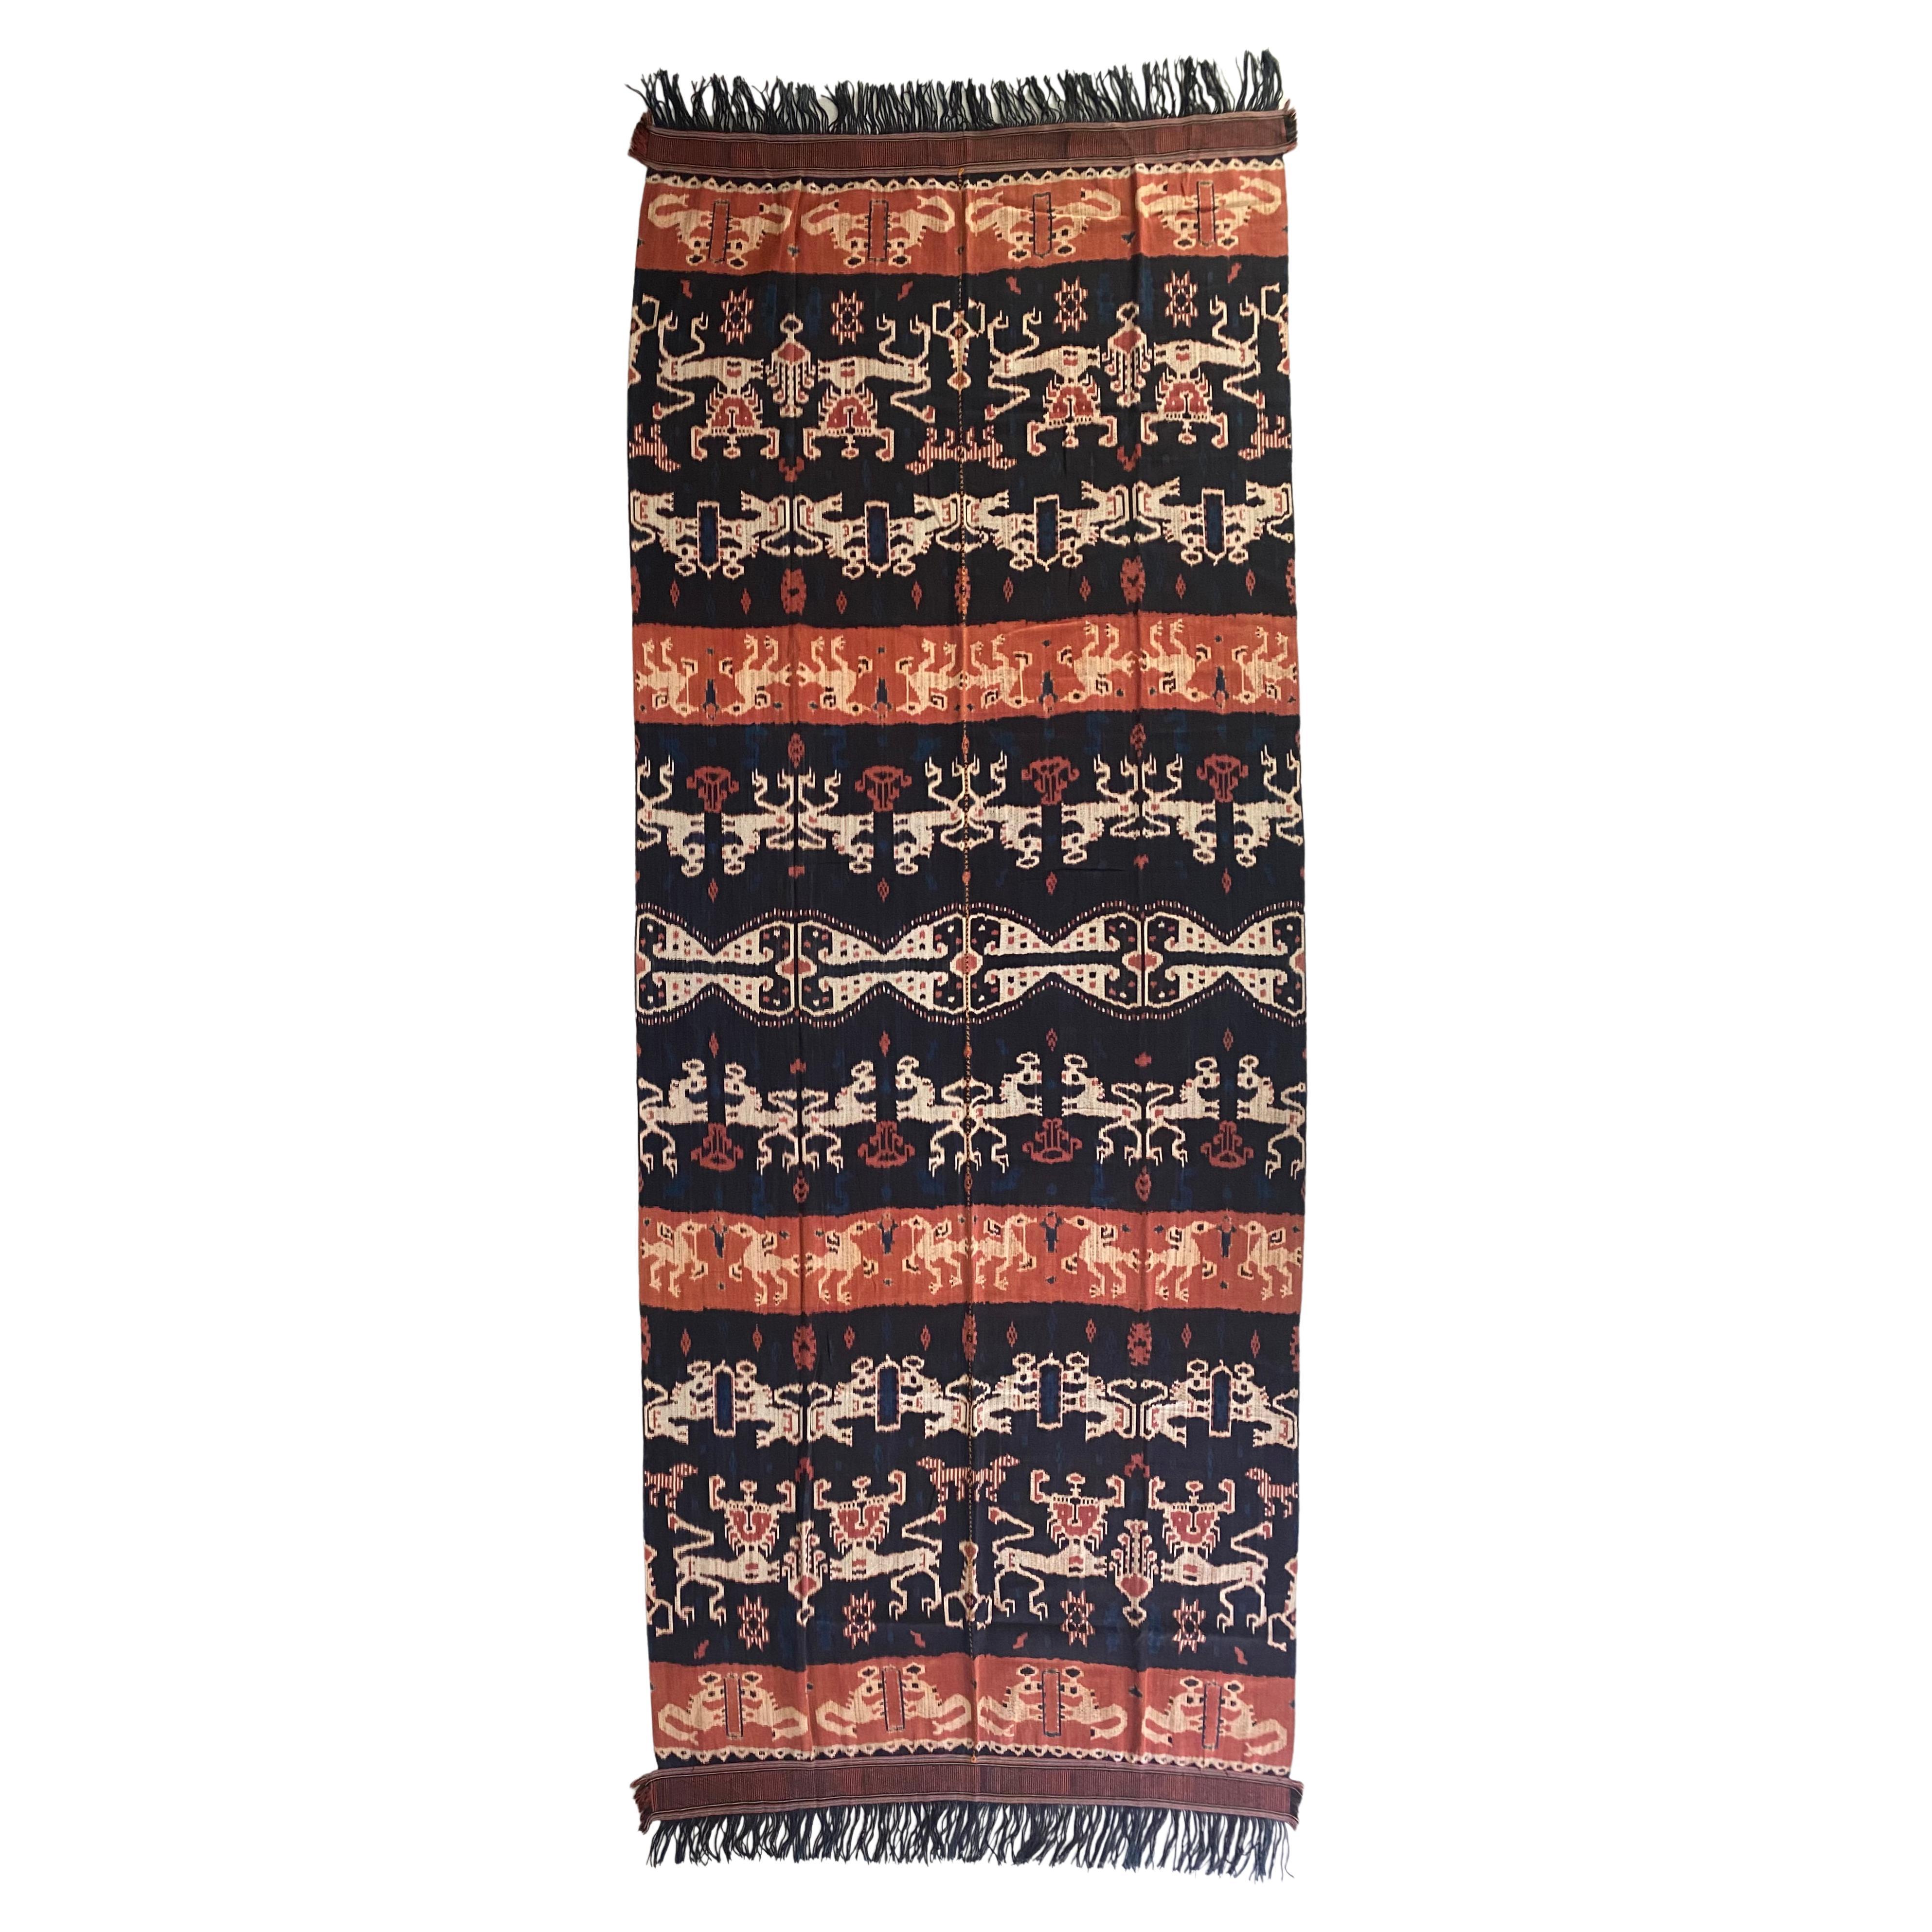 Textile Ikat de l'île de Sumba, Indonésie